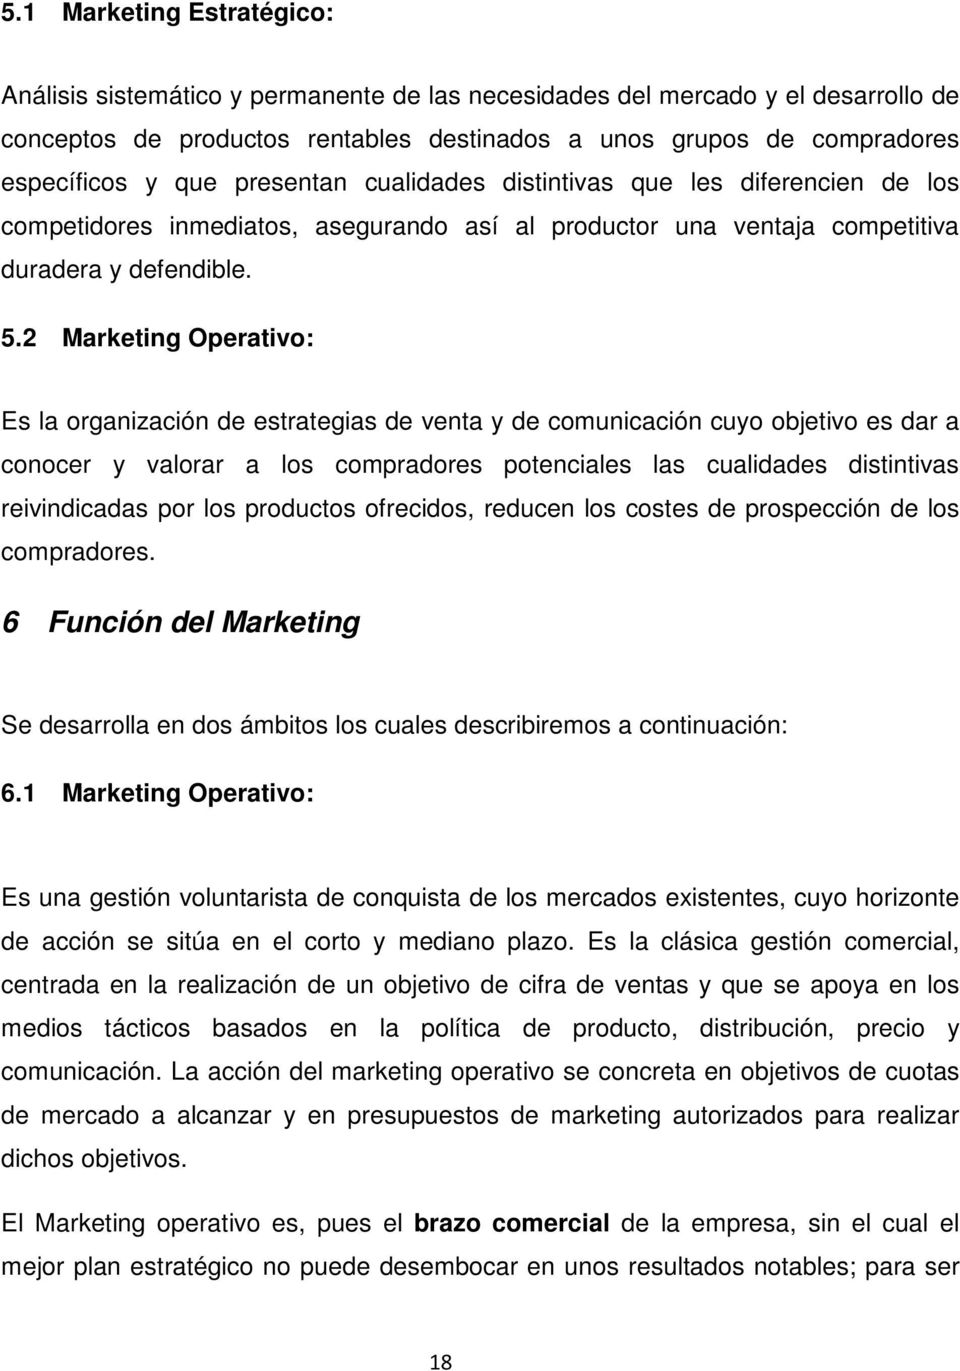 2 Marketing Operativo: Es la organización de estrategias de venta y de comunicación cuyo objetivo es dar a conocer y valorar a los compradores potenciales las cualidades distintivas reivindicadas por